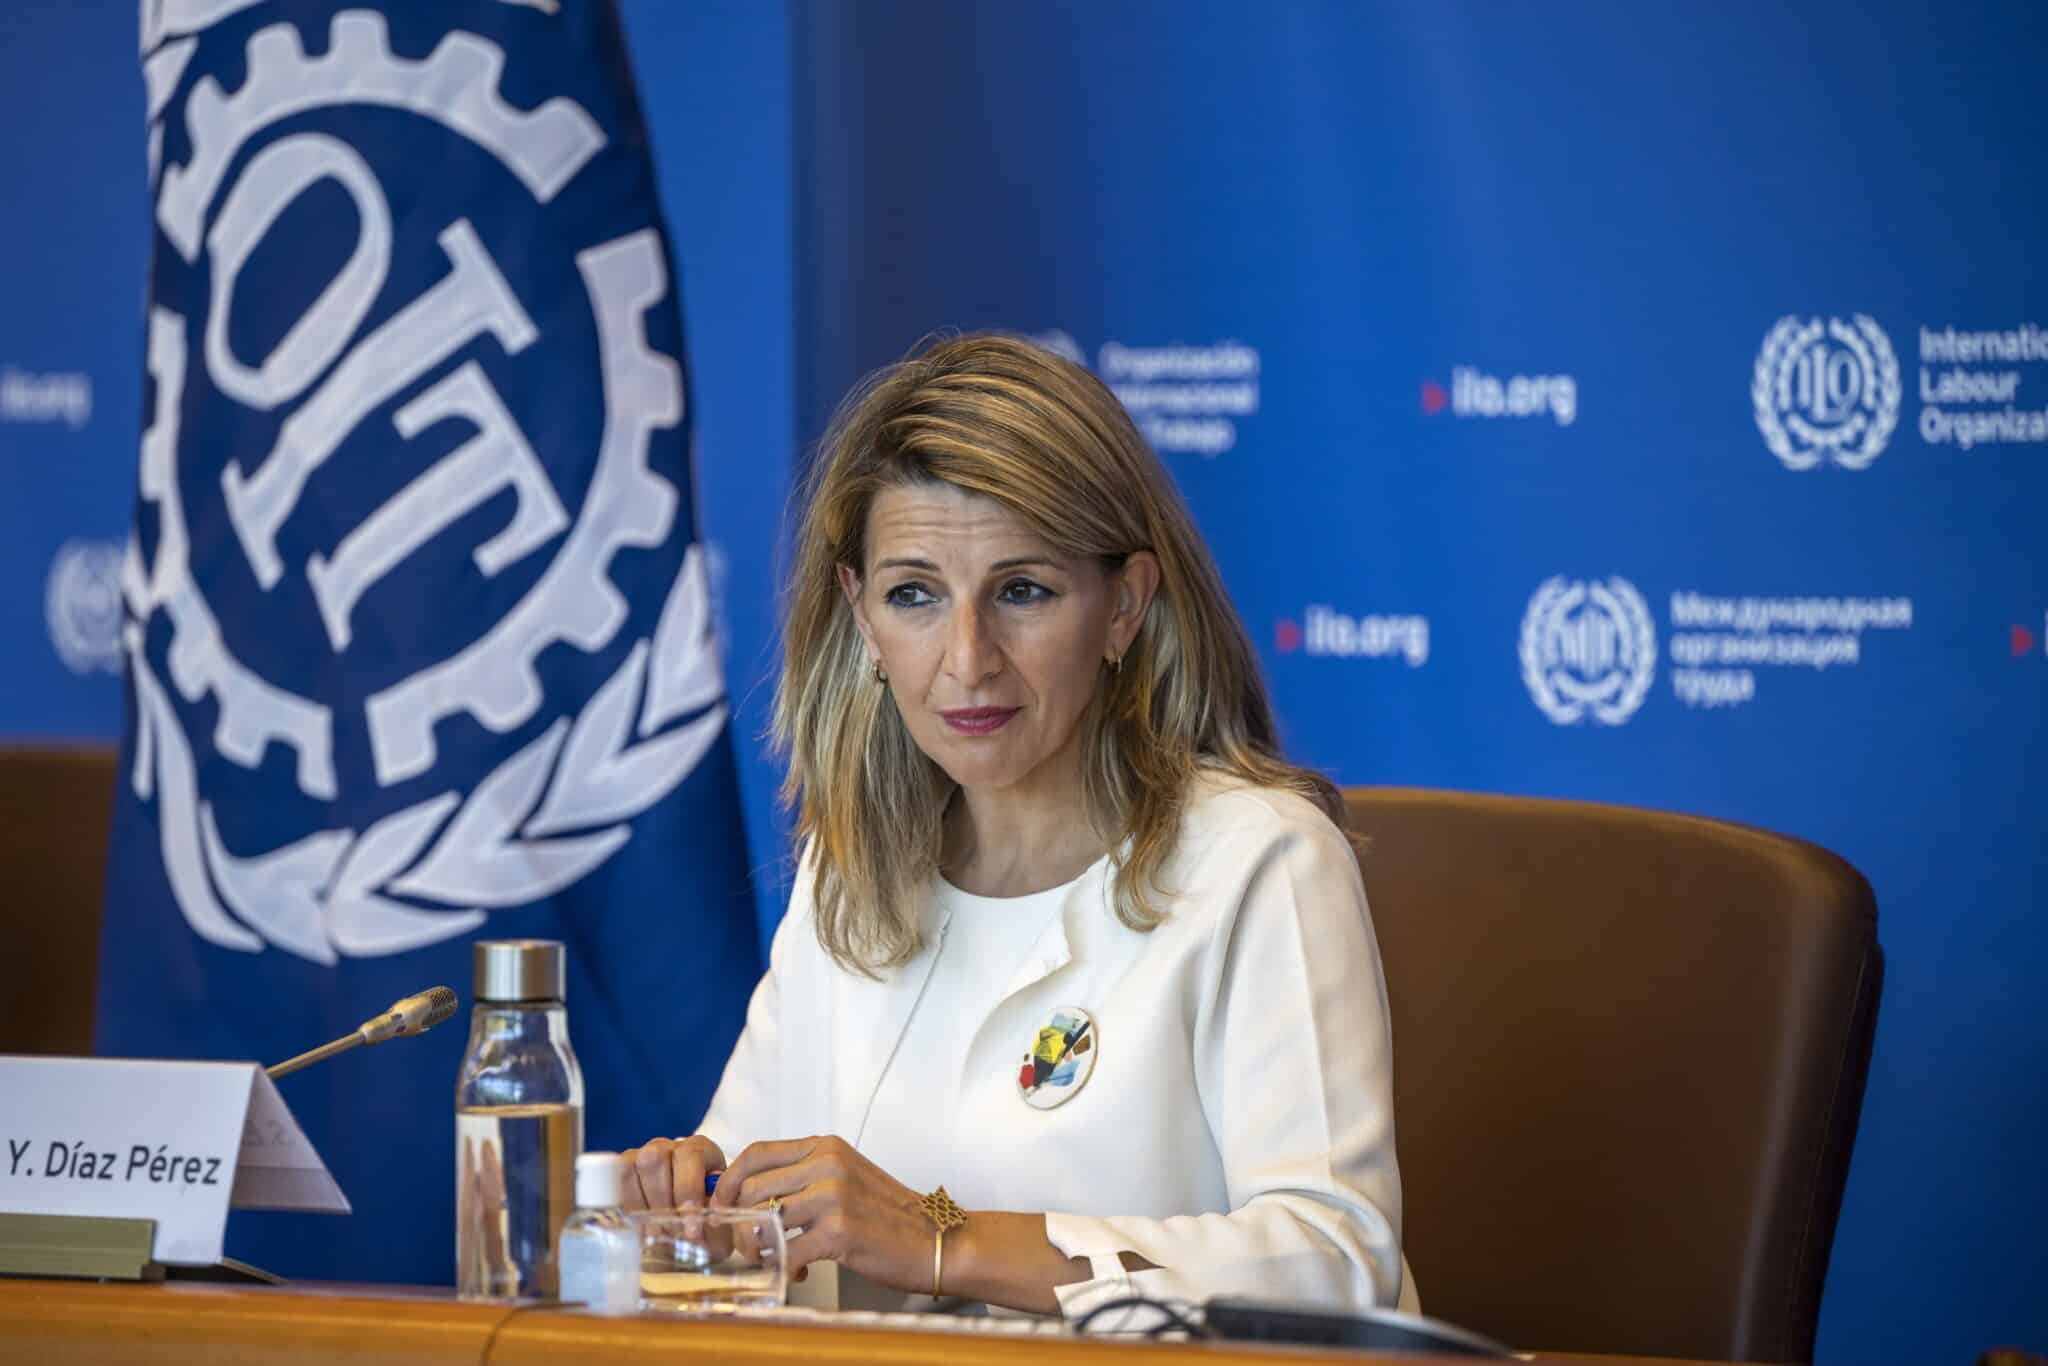 La ministra de Trabajo y Economía Social de España, Yolanda Díaz, escucha los discursos, durante una reunión con el Director General de la Organización Internacional del Trabajo